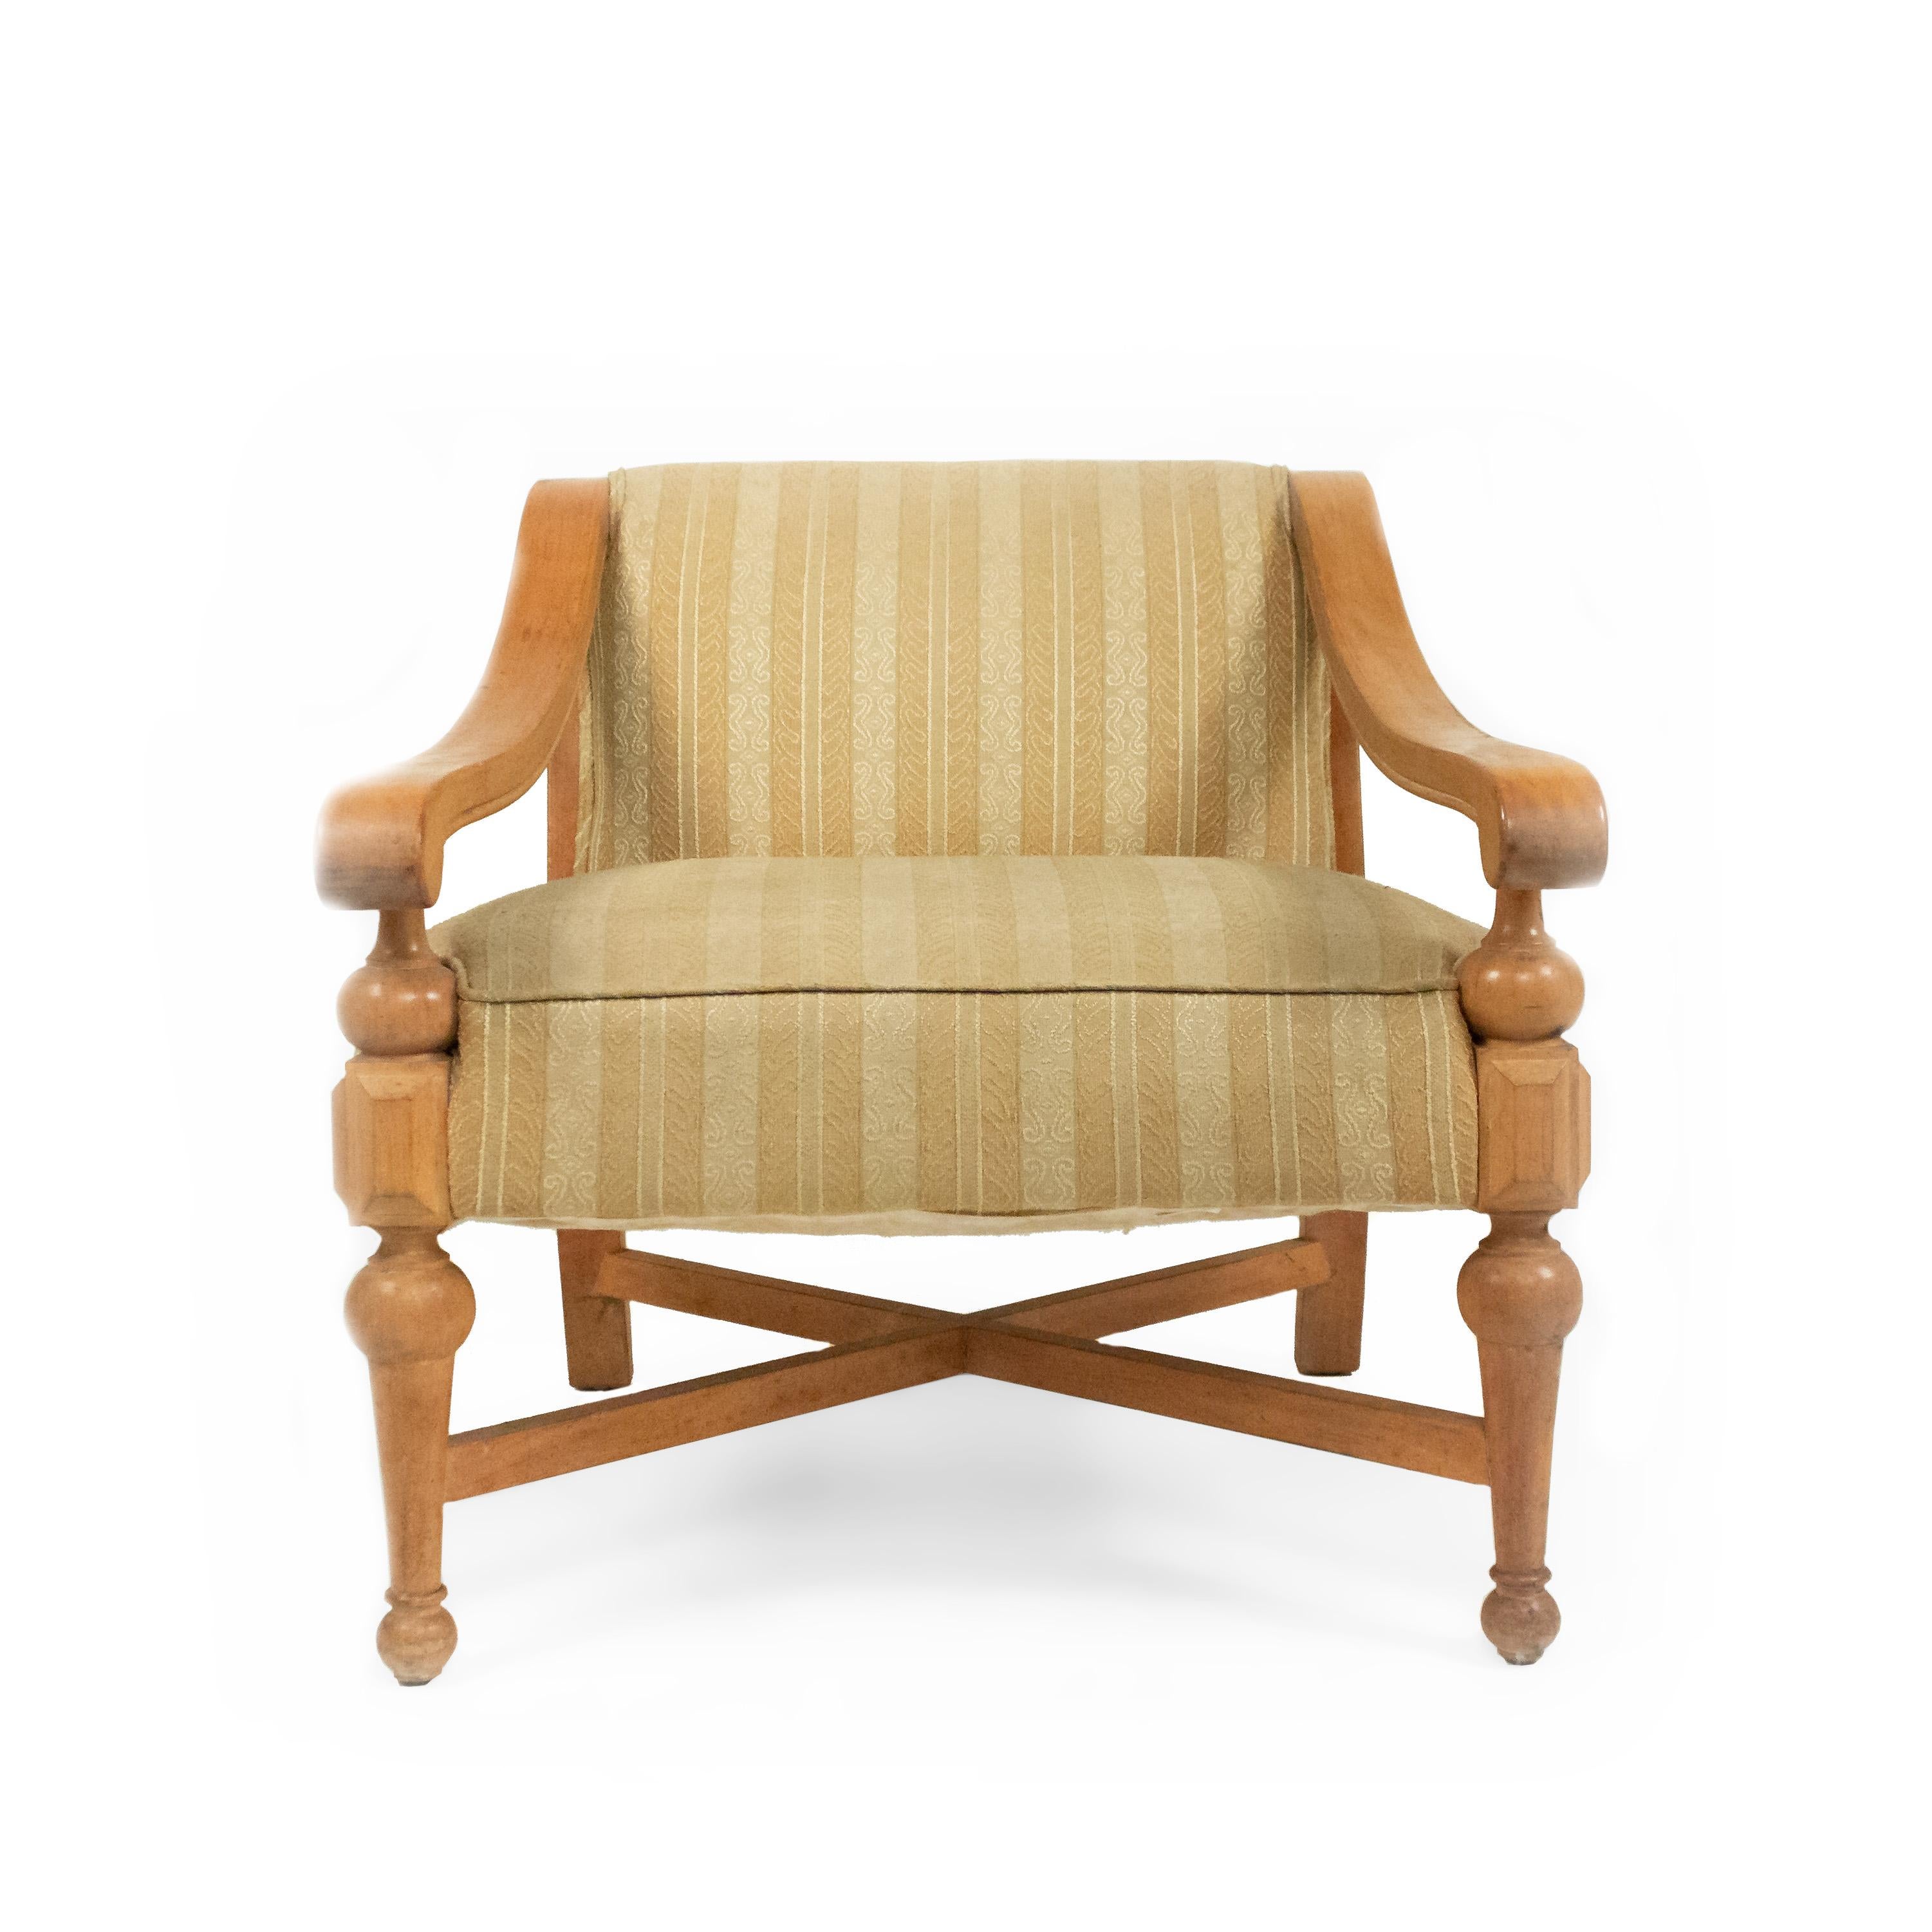 3 fauteuils américains en sycomore des années 1960, dont l'assise et le dossier sont tapissés d'un motif floral jaune clair, avec une base et un dossier en X (PRIX DE CHAQUE CHAMBRE).